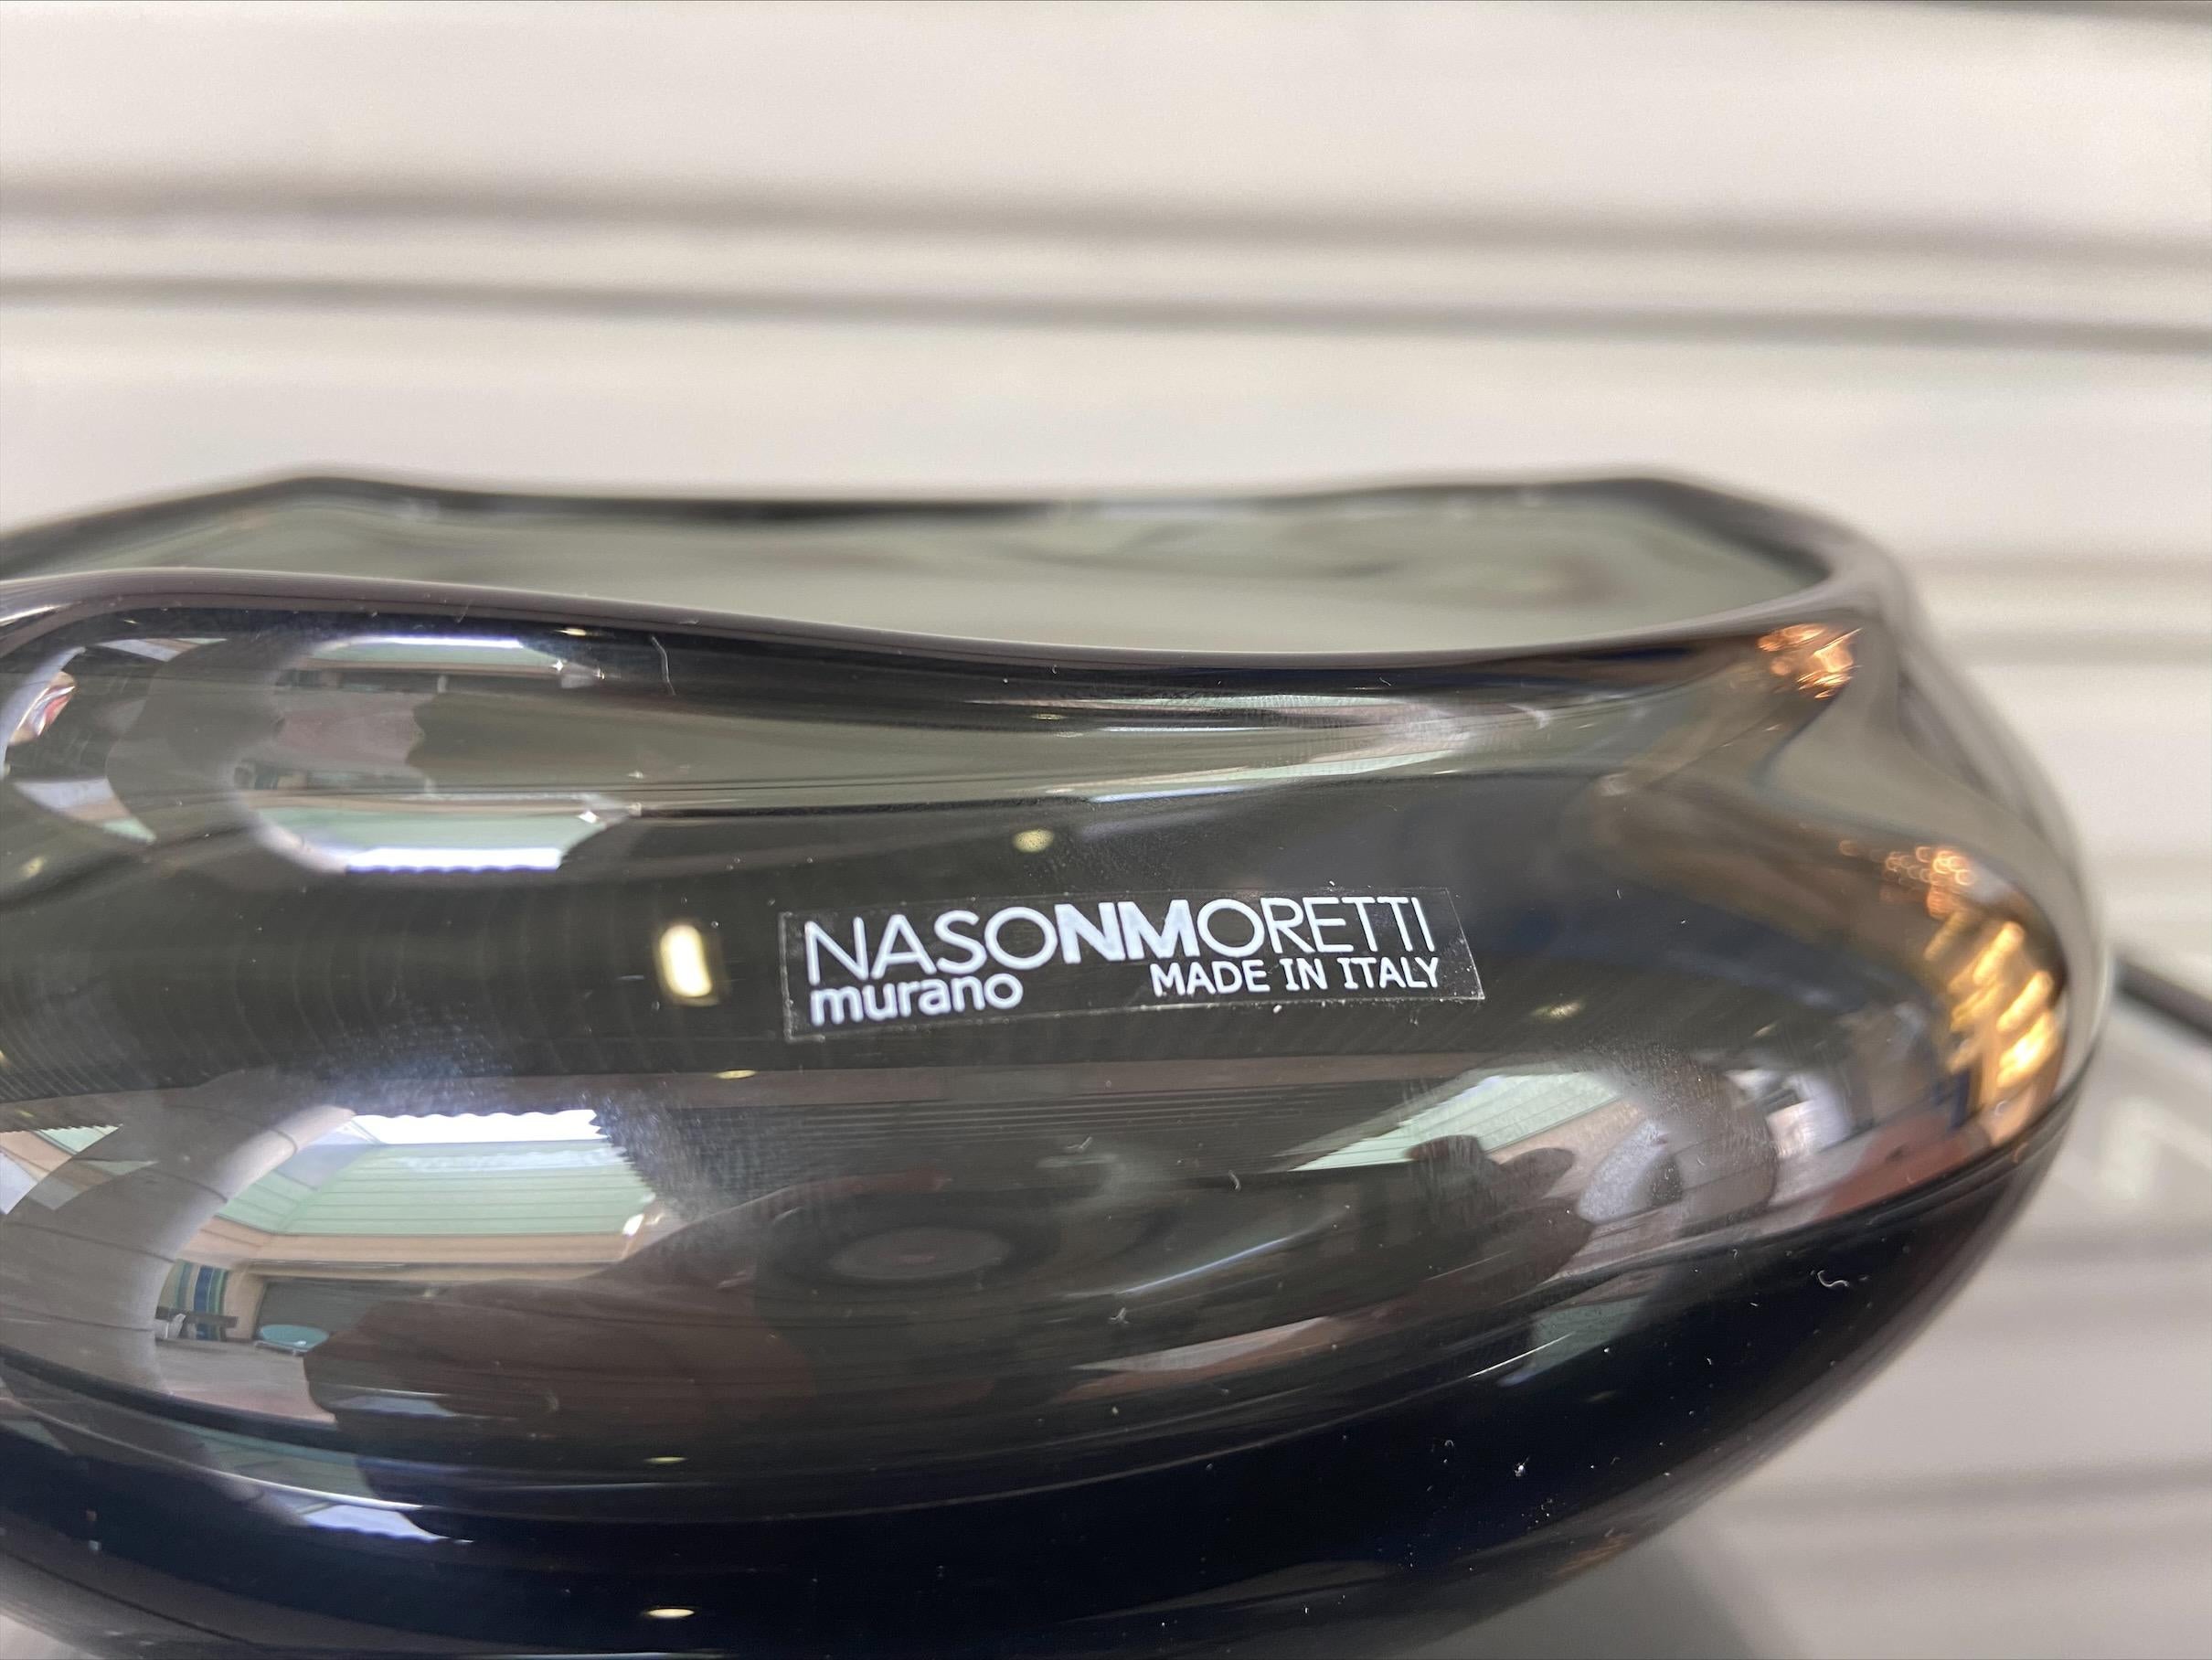 Pocket Box, Nason Moretti Murano Glass In Good Condition For Sale In Saint ouen, FR